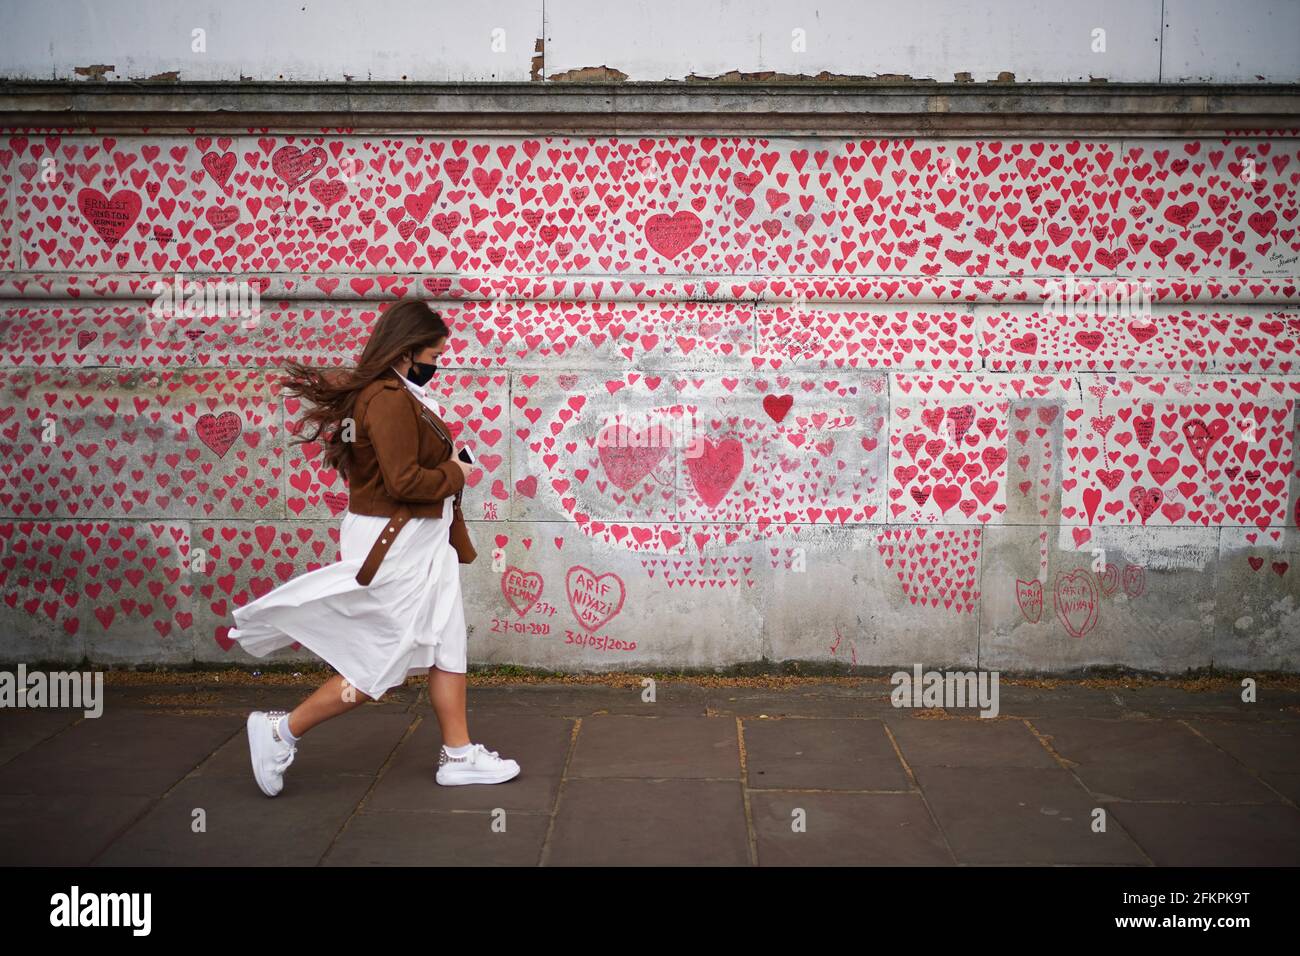 Una donna passa davanti al National Covid Memorial Wall sull'argine di Londra, dopo l'ulteriore allentamento delle restrizioni di blocco in Inghilterra. Data immagine: Lunedì 3 maggio 2021. Foto Stock